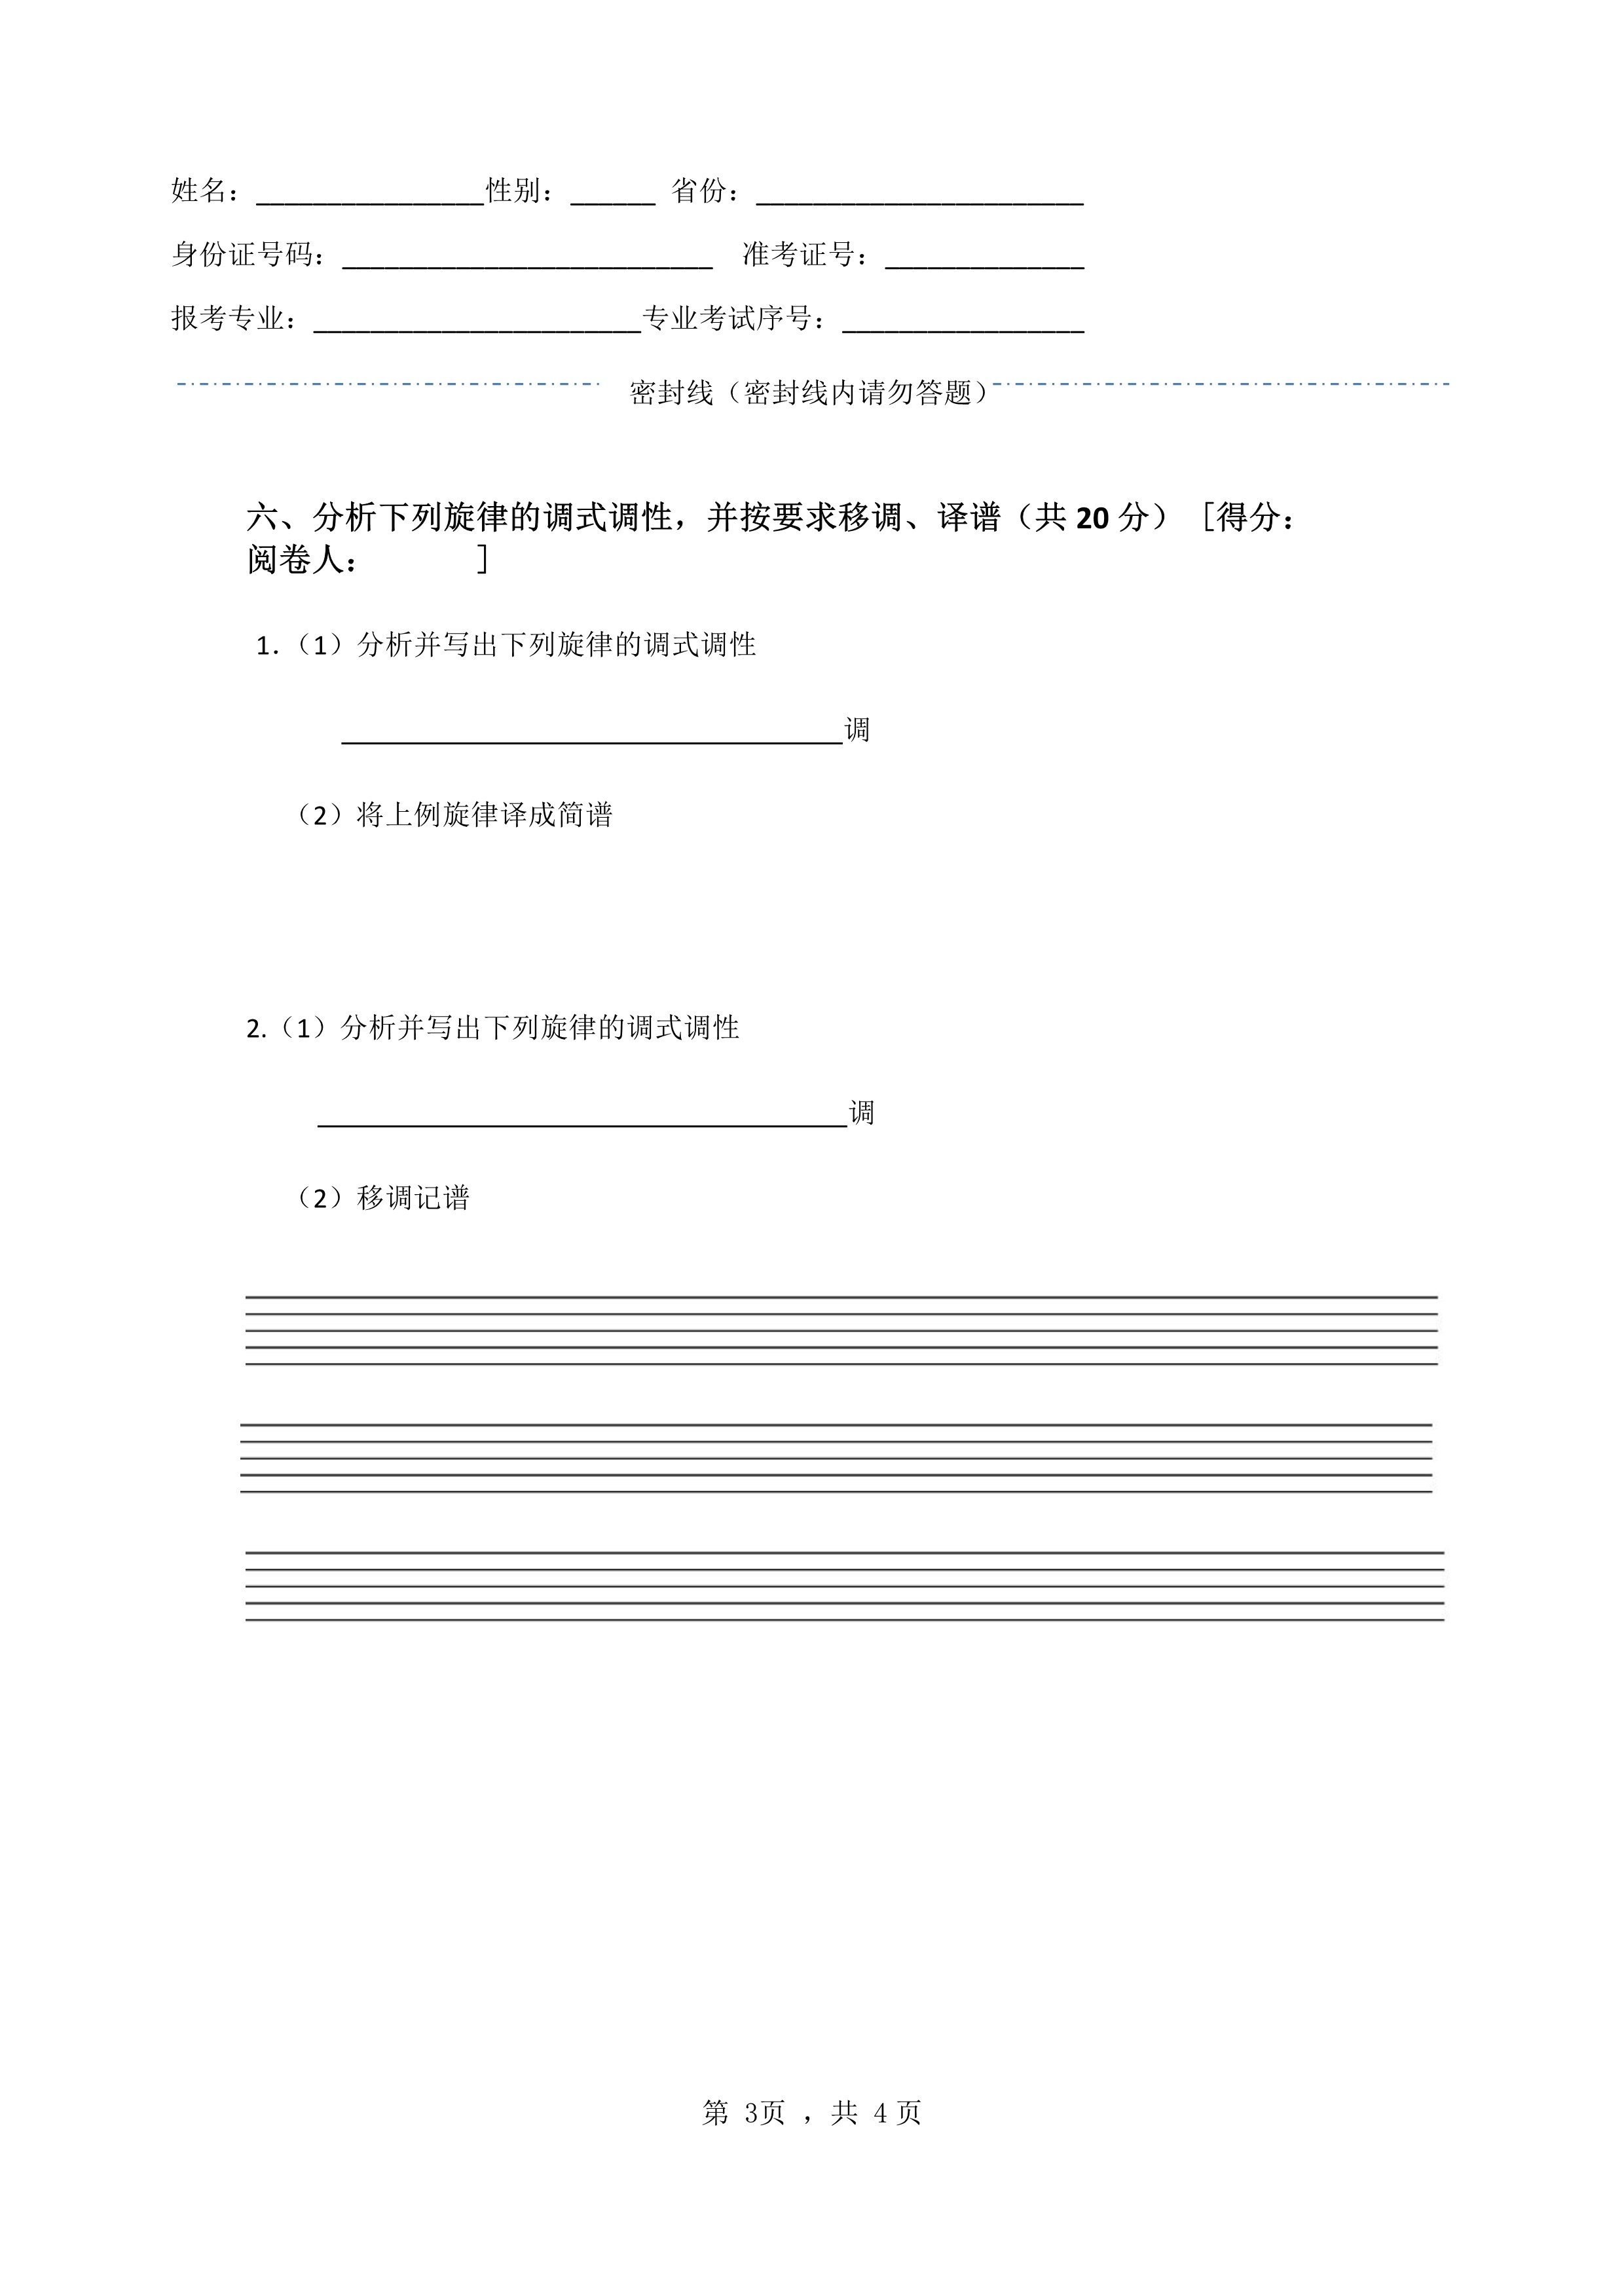 南京艺术学院2022年本科招生音乐类专业《基本乐理》科目考试答题纸及草稿纸_3.jpg